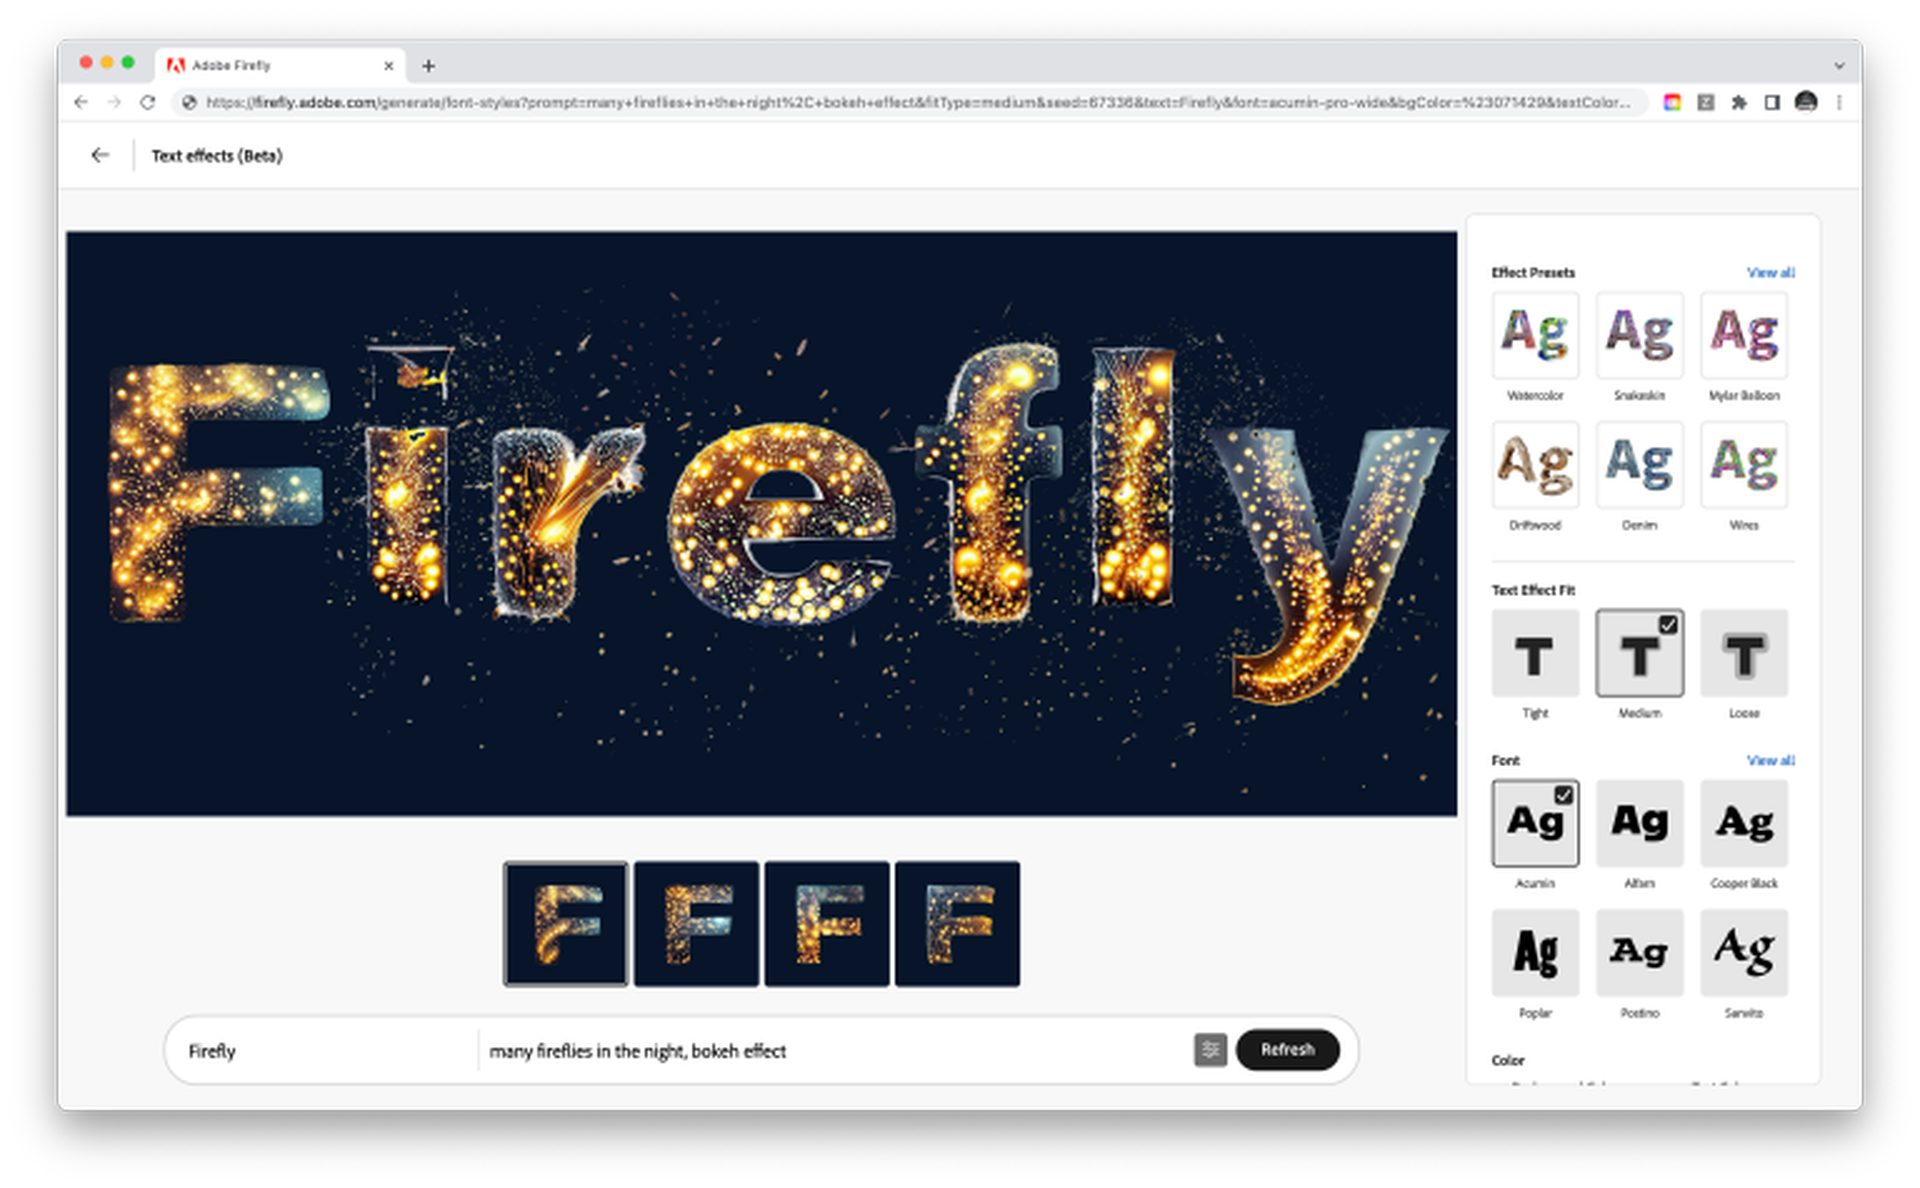 Örneklerle Adobe Firefly AI nasıl kullanılır? Adobe AI'nin özelliklerini öğrenin ve üretken AI'nın tam potansiyeline ulaşın. Okumaya devam edin ve daha fazlasını keşfedin